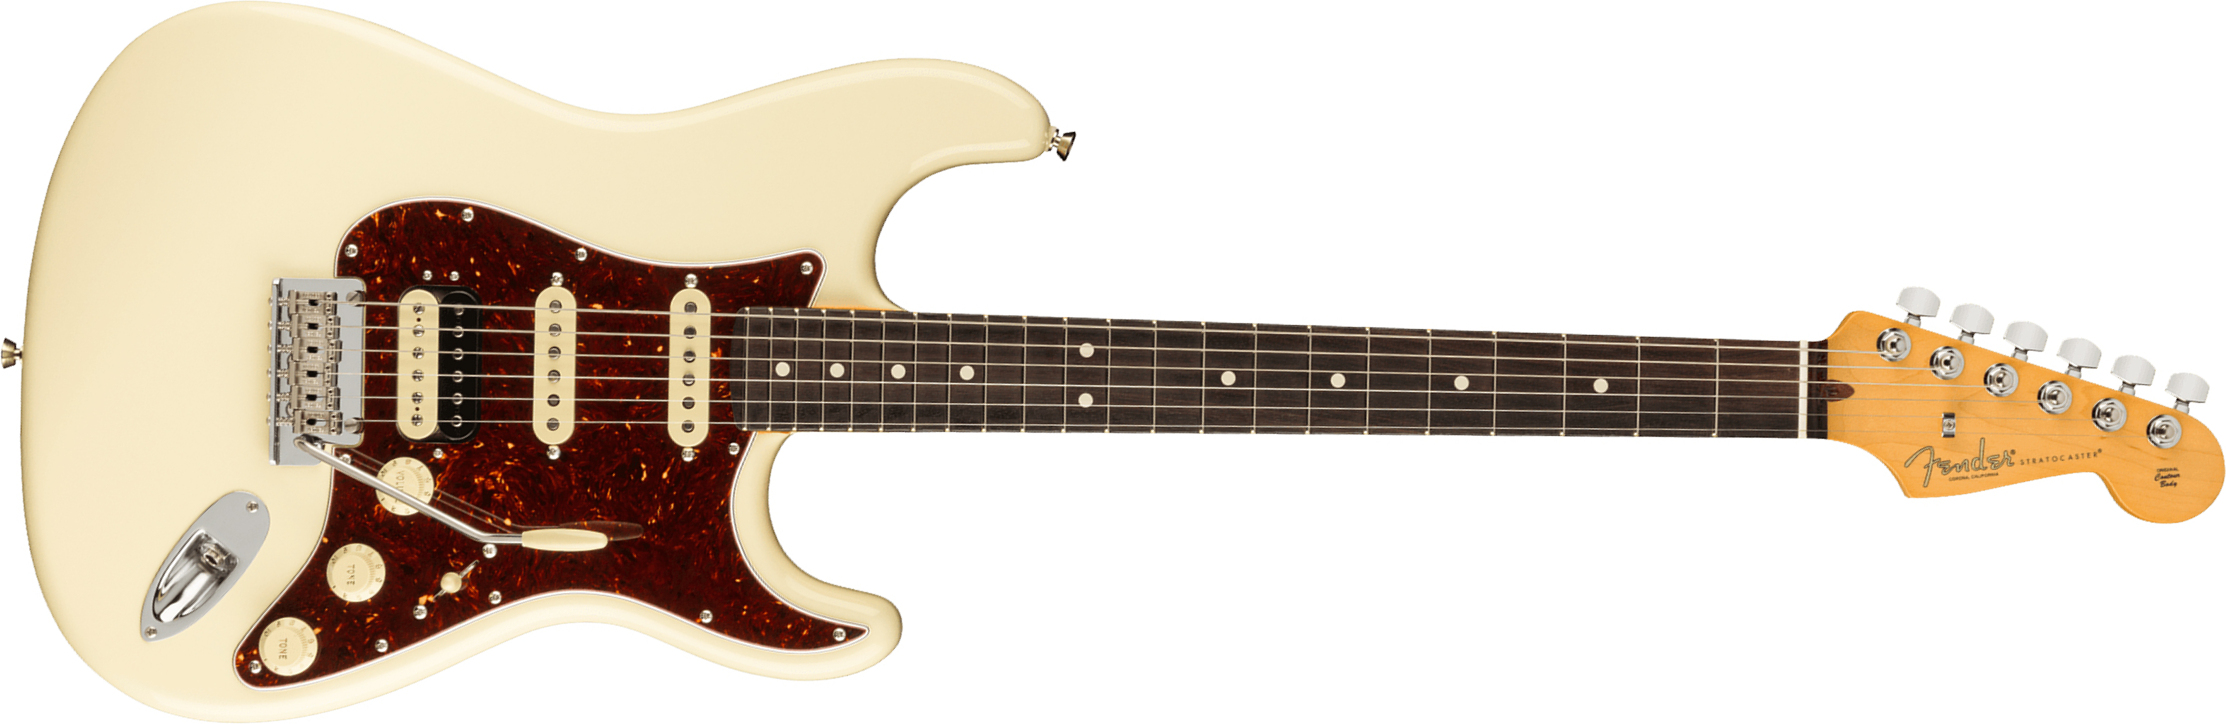 Fender Strat American Professional Ii Hss Usa Rw - Olympic White - Elektrische gitaar in Str-vorm - Main picture